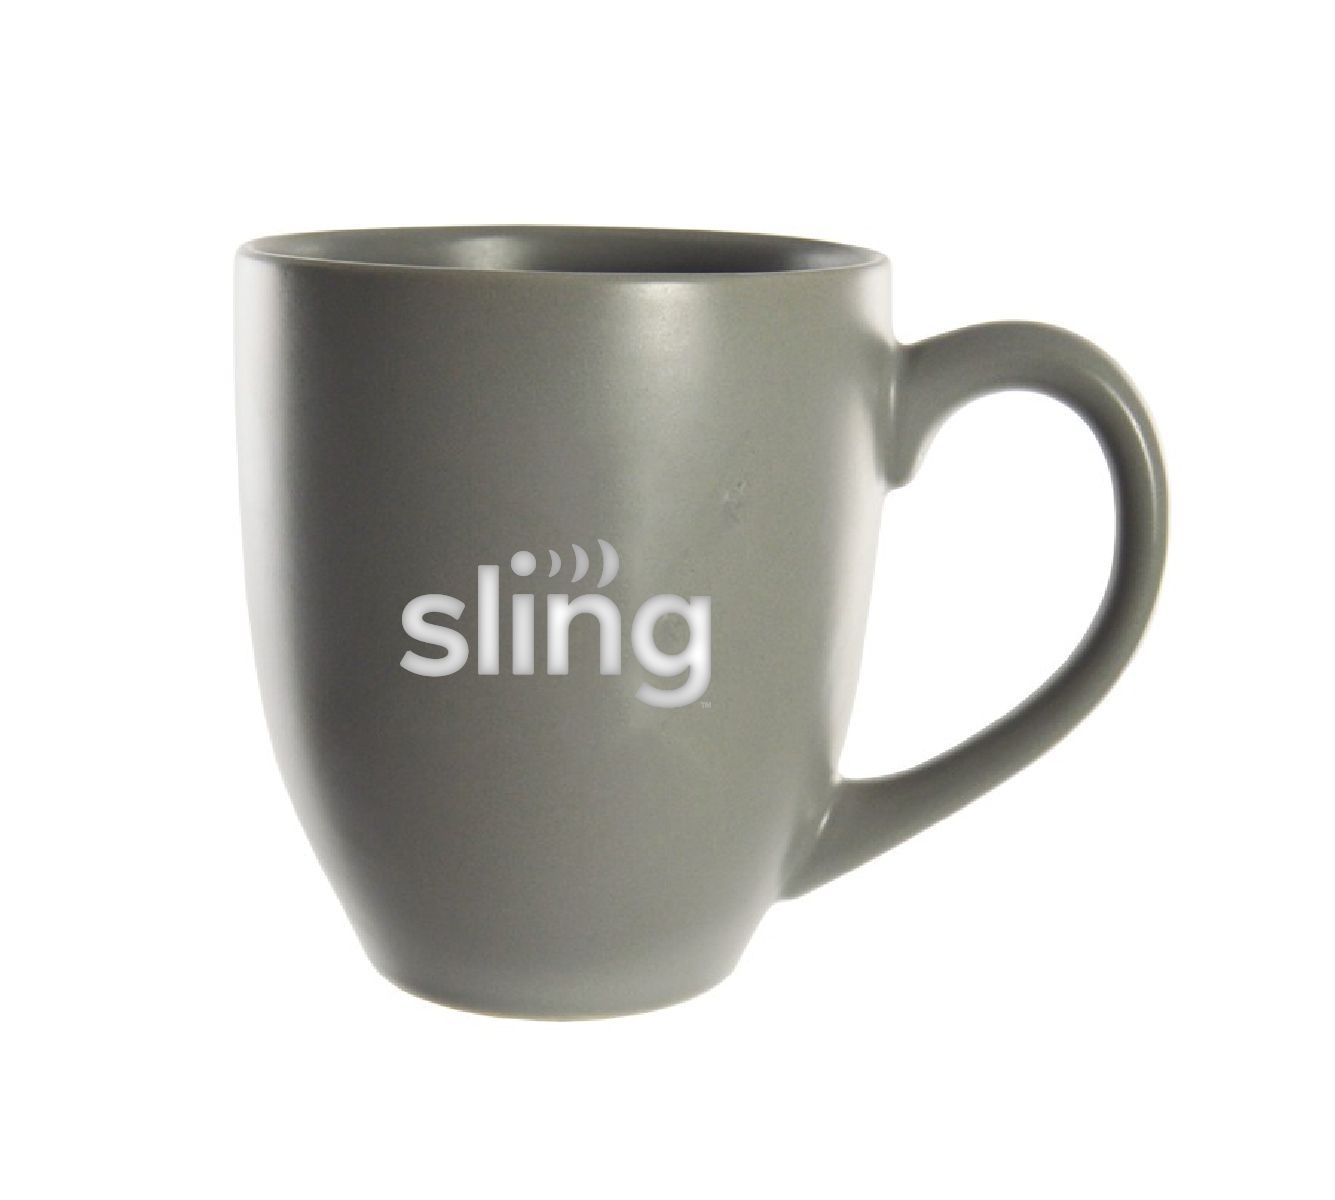 15 oz. Ceramic Bistro Coffee Mug with Sling Logo